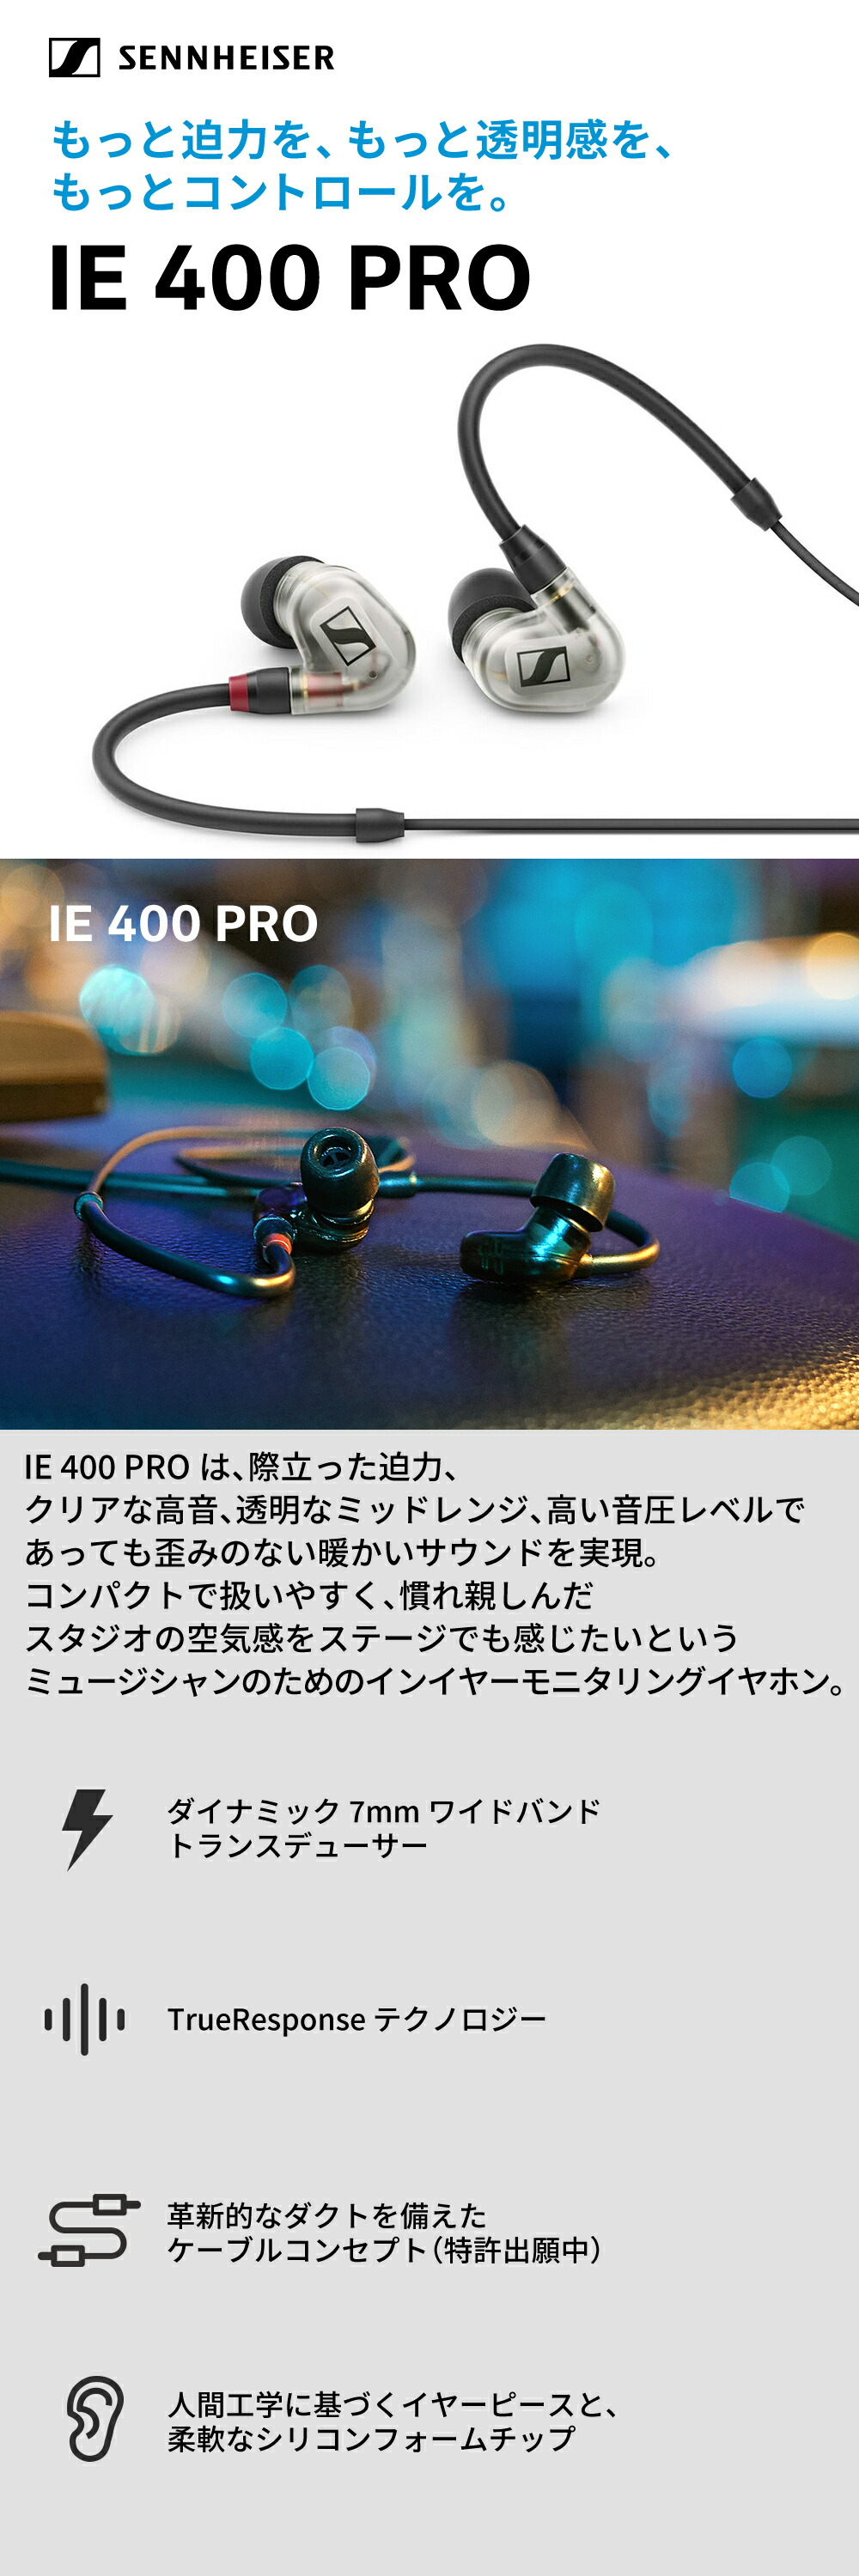 【新規購入】新品・ストア★ゼンハイザー カナル型イヤホン IE 400 PRO SMOKY BLACK ゼンハイザー